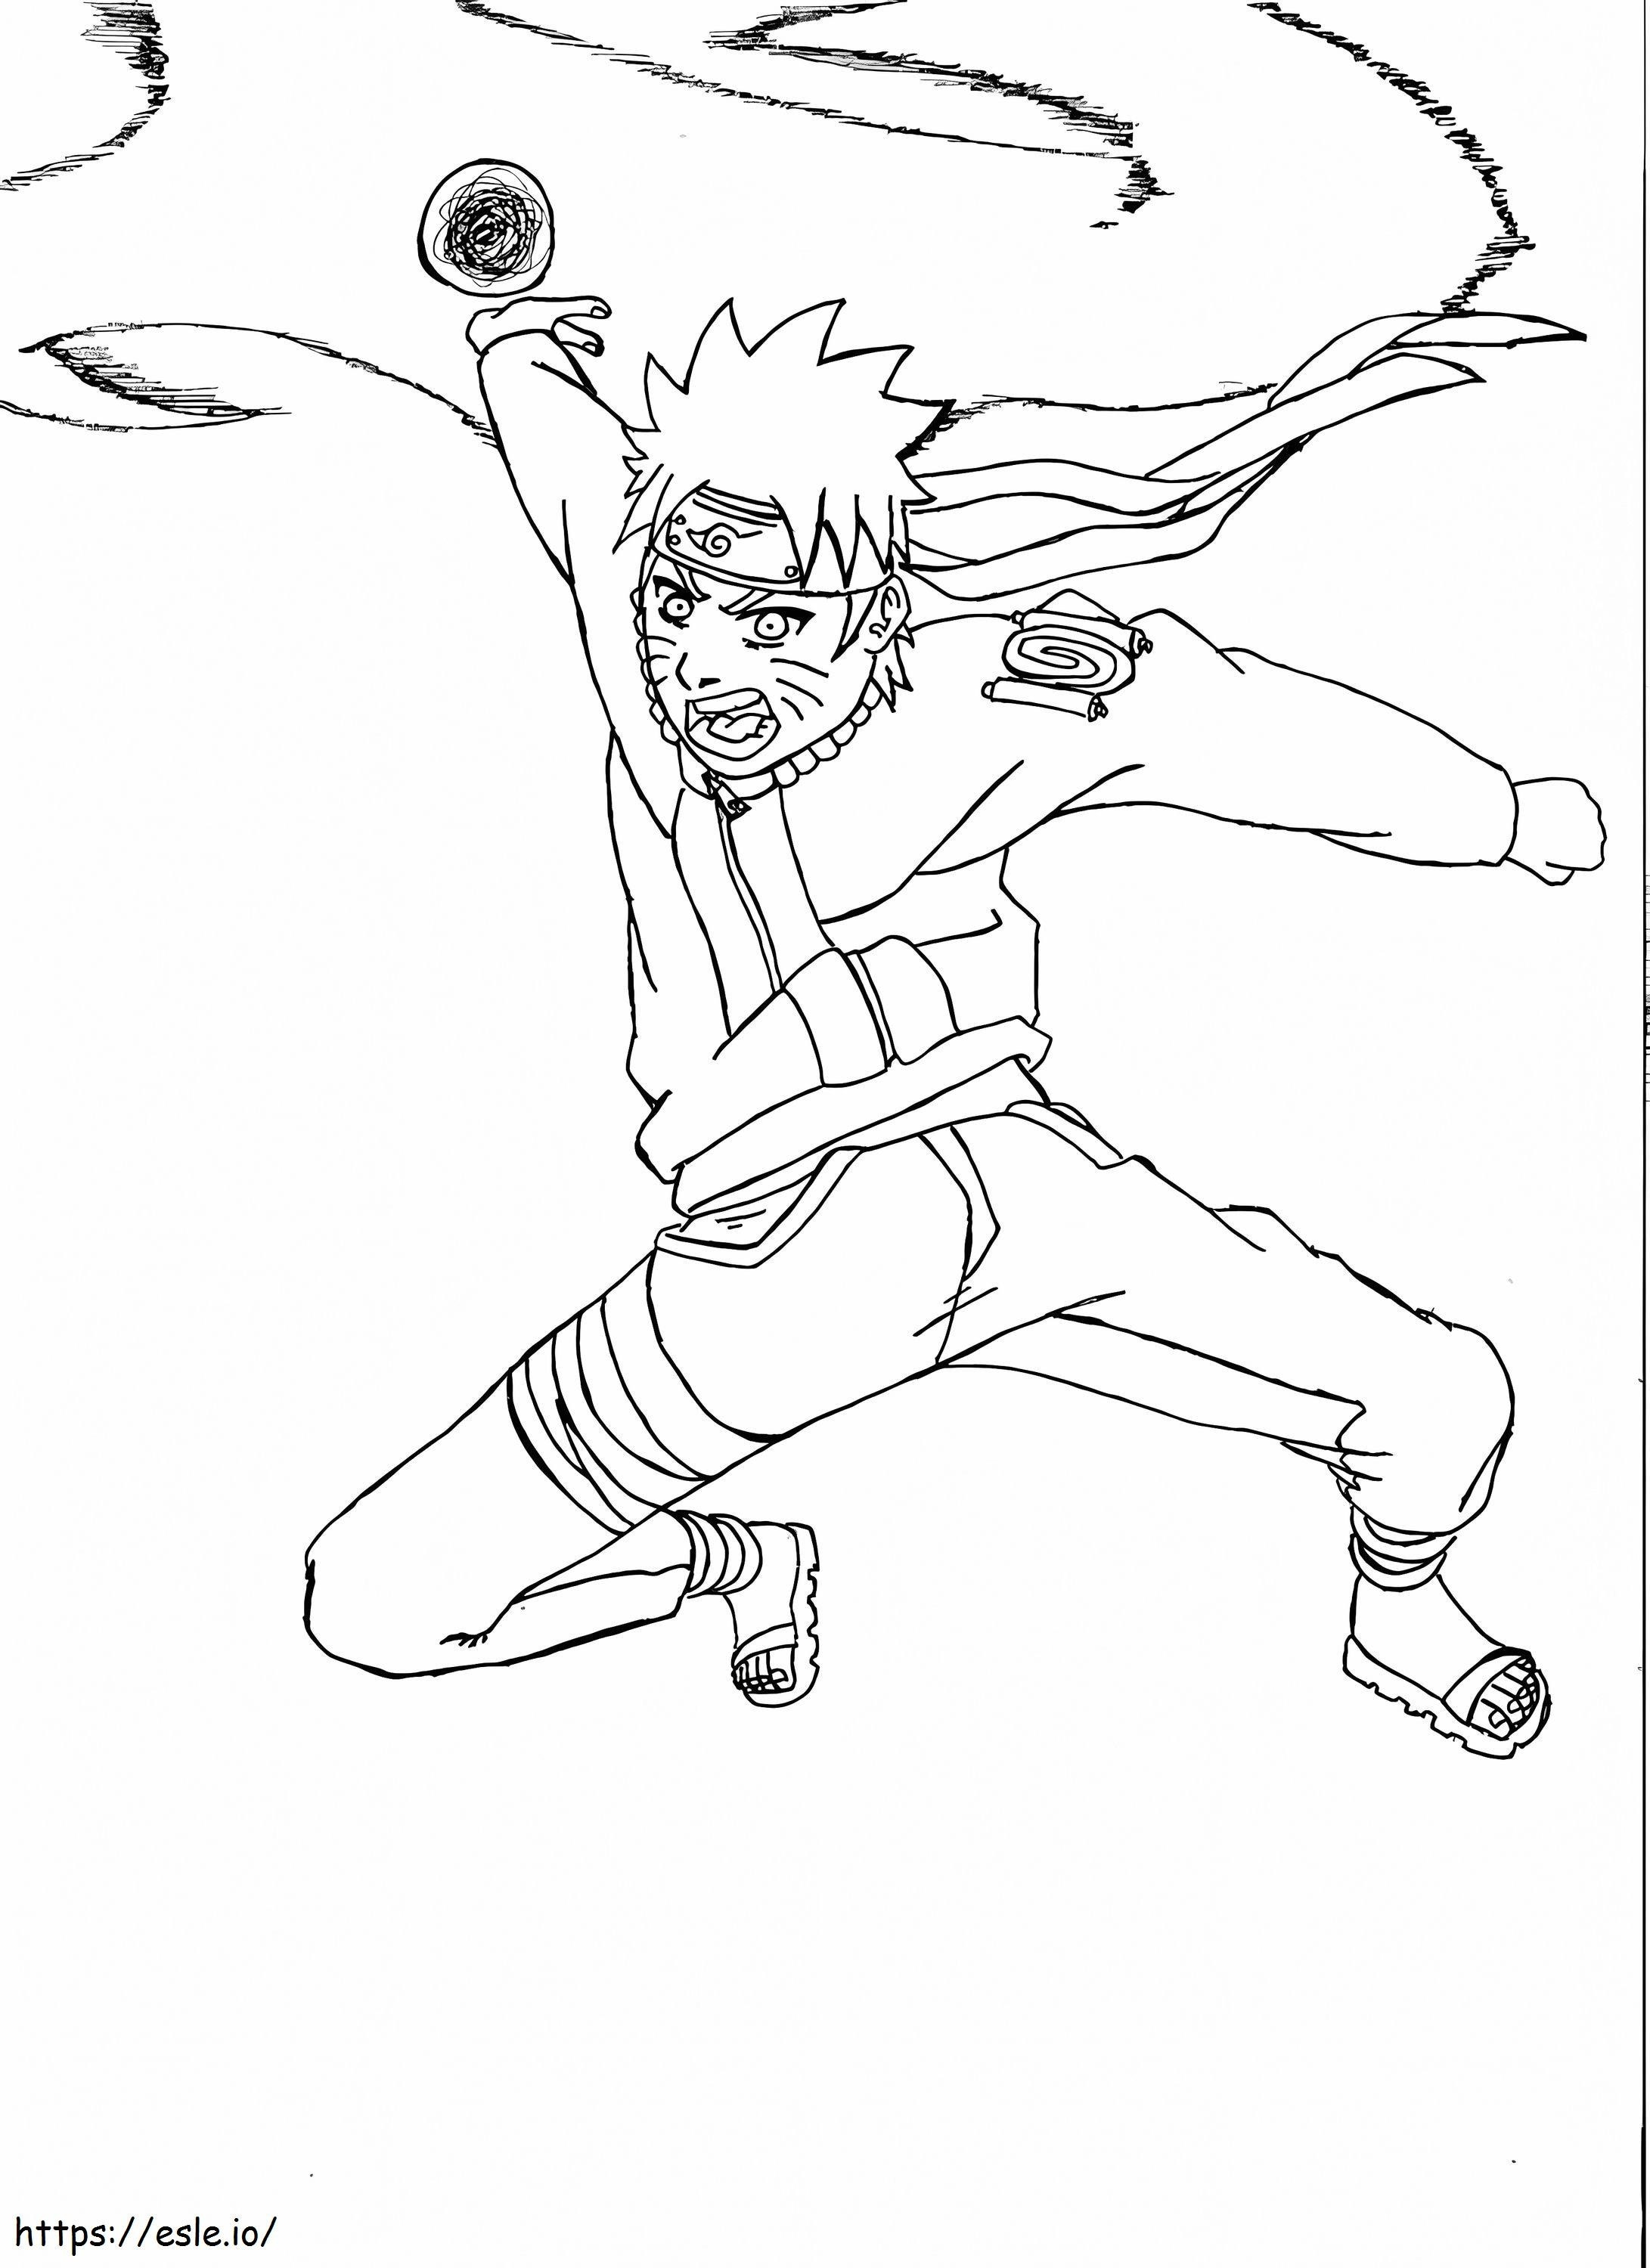 Attacking Naruto coloring page